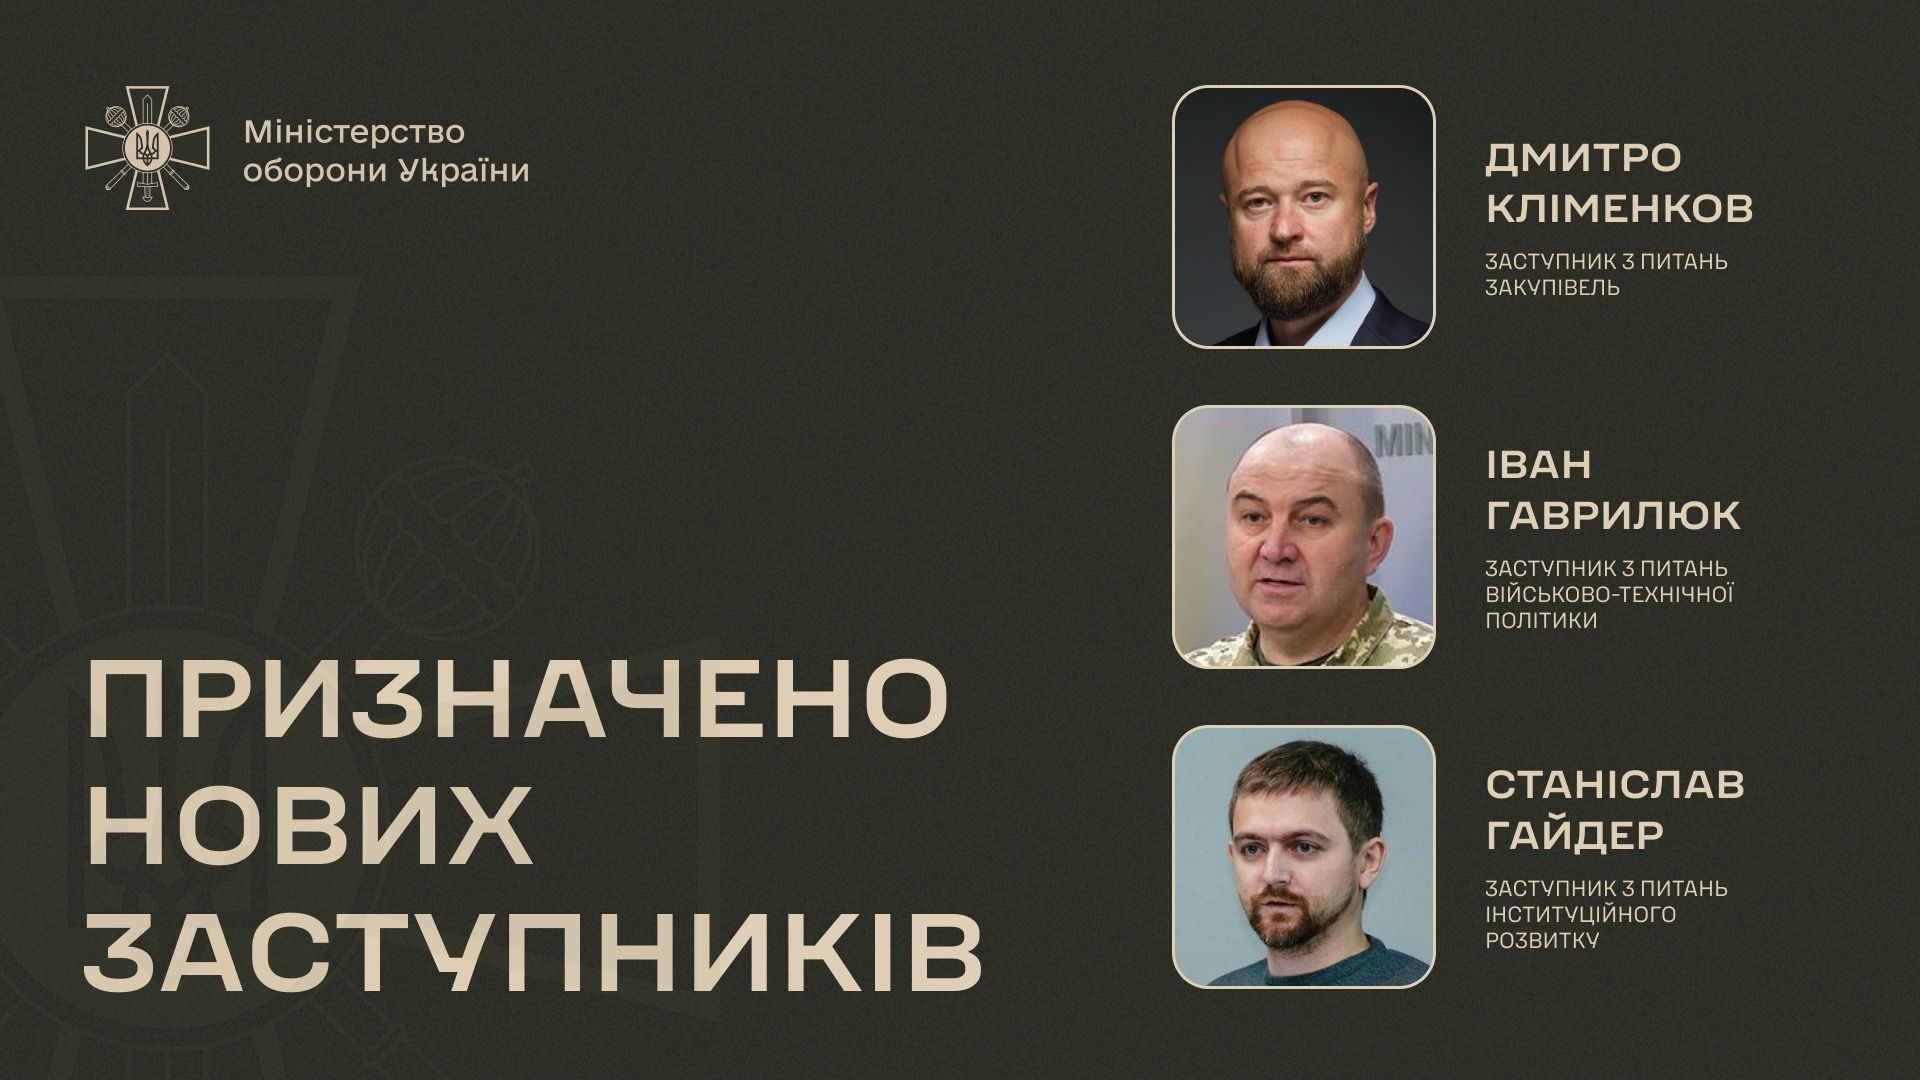 Гаврилюк, Гайдер і Кліменков призначені заступниками міністра оборони